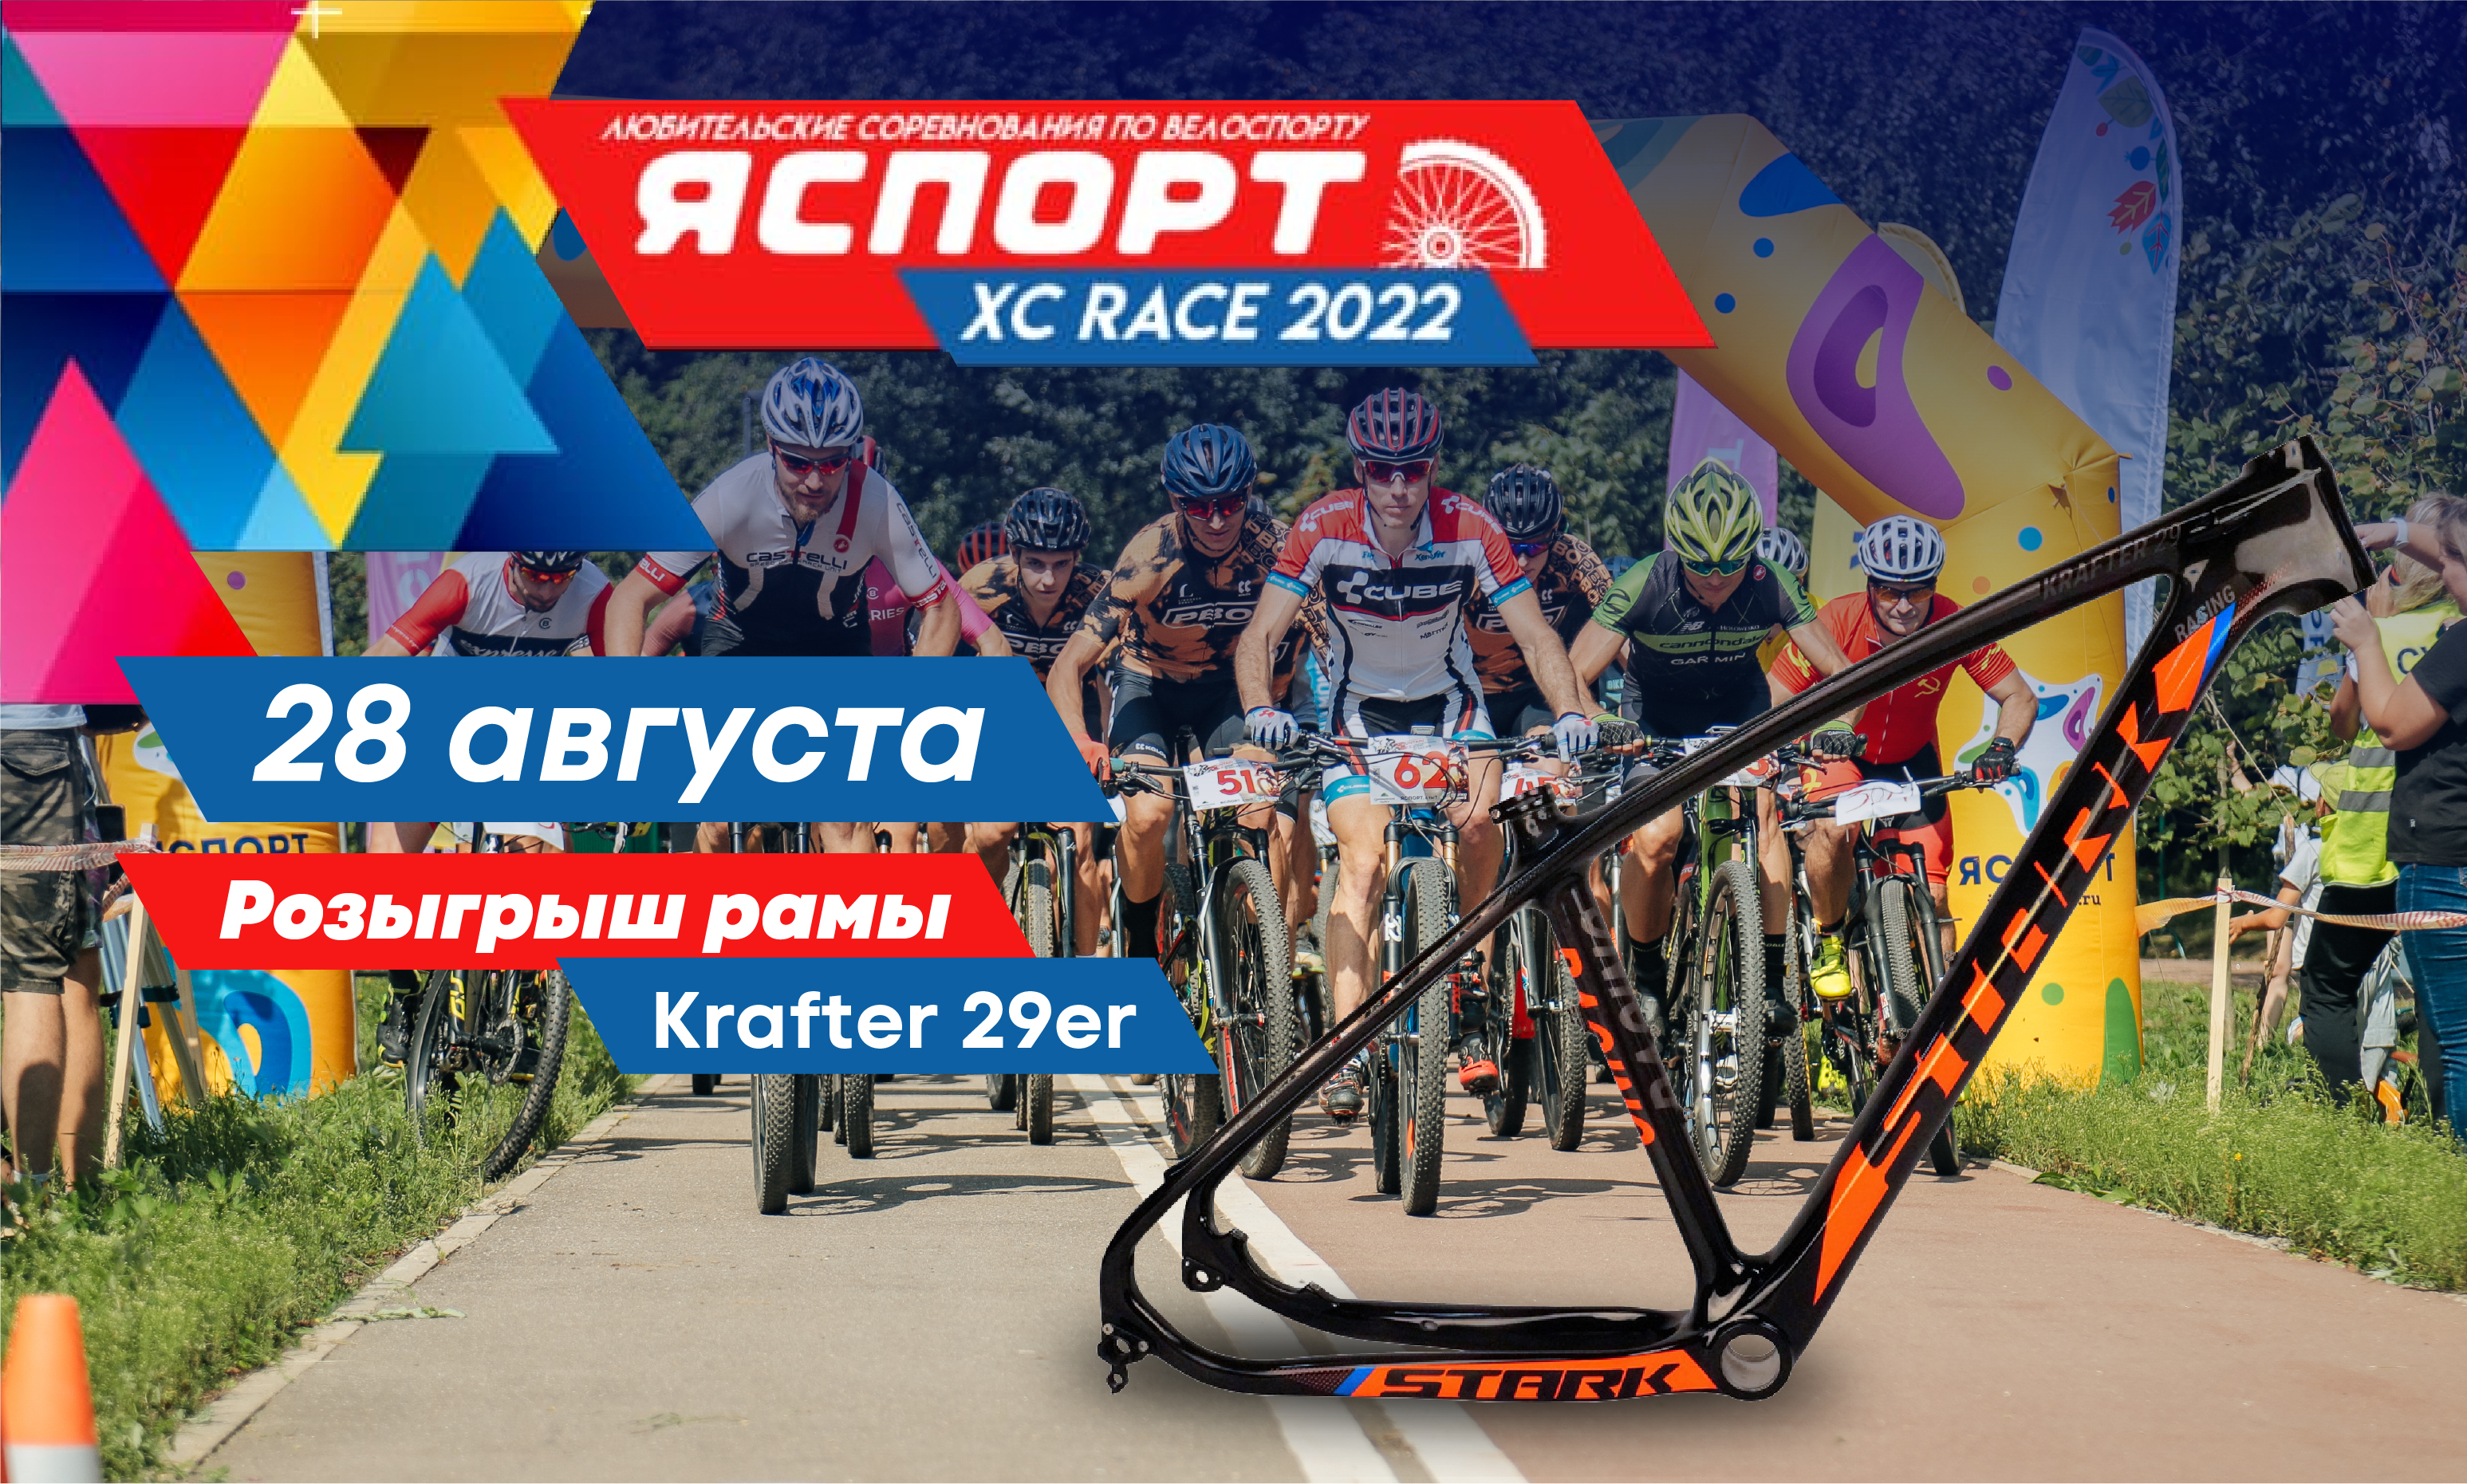 STARK генеральный спонсор соревнований ЯСПОРТ XC Race 2022